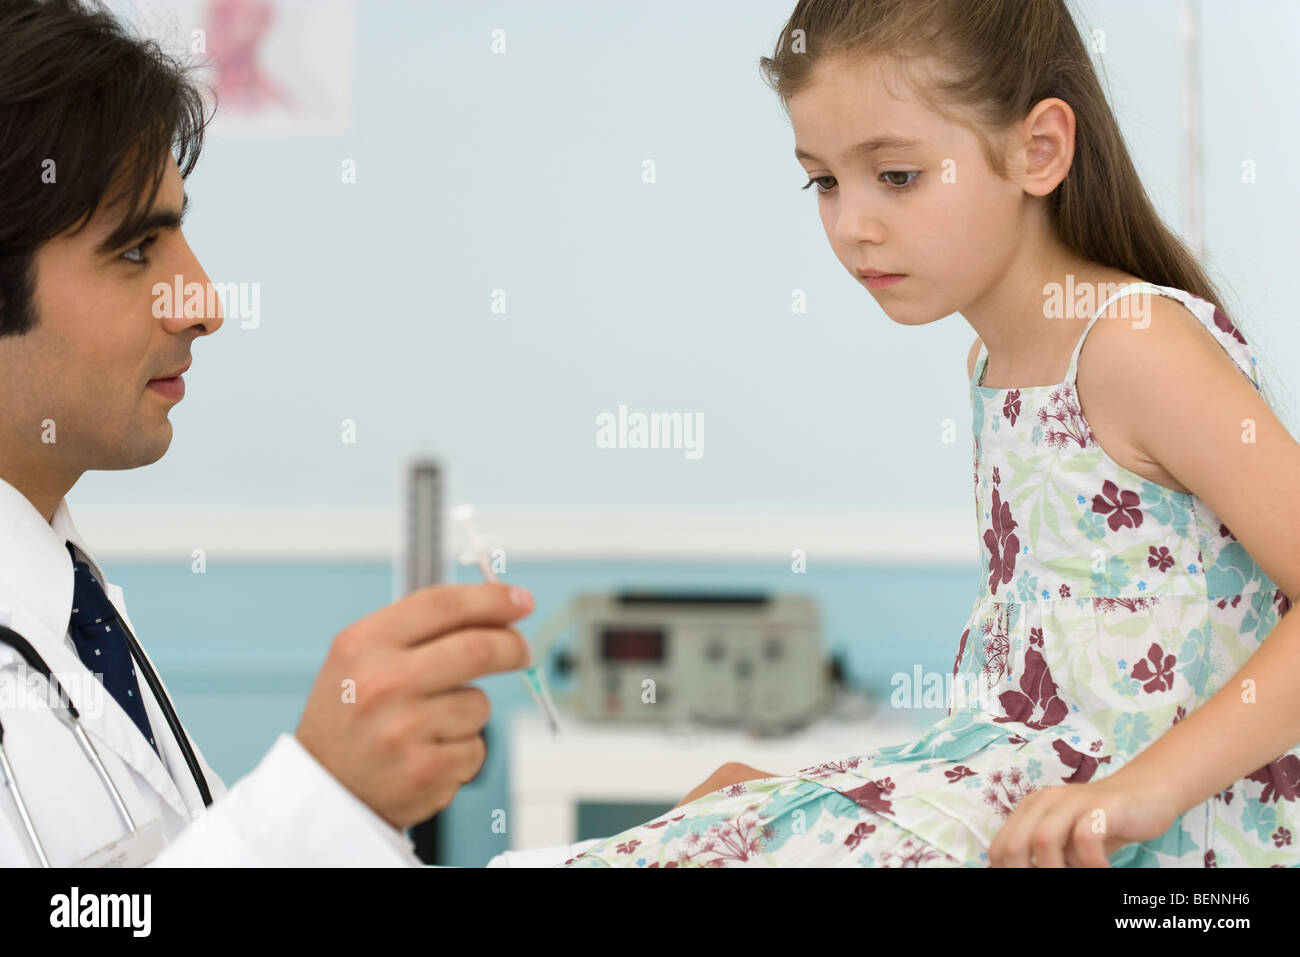 Pediatrician explaining syringe to little girl Stock Photo